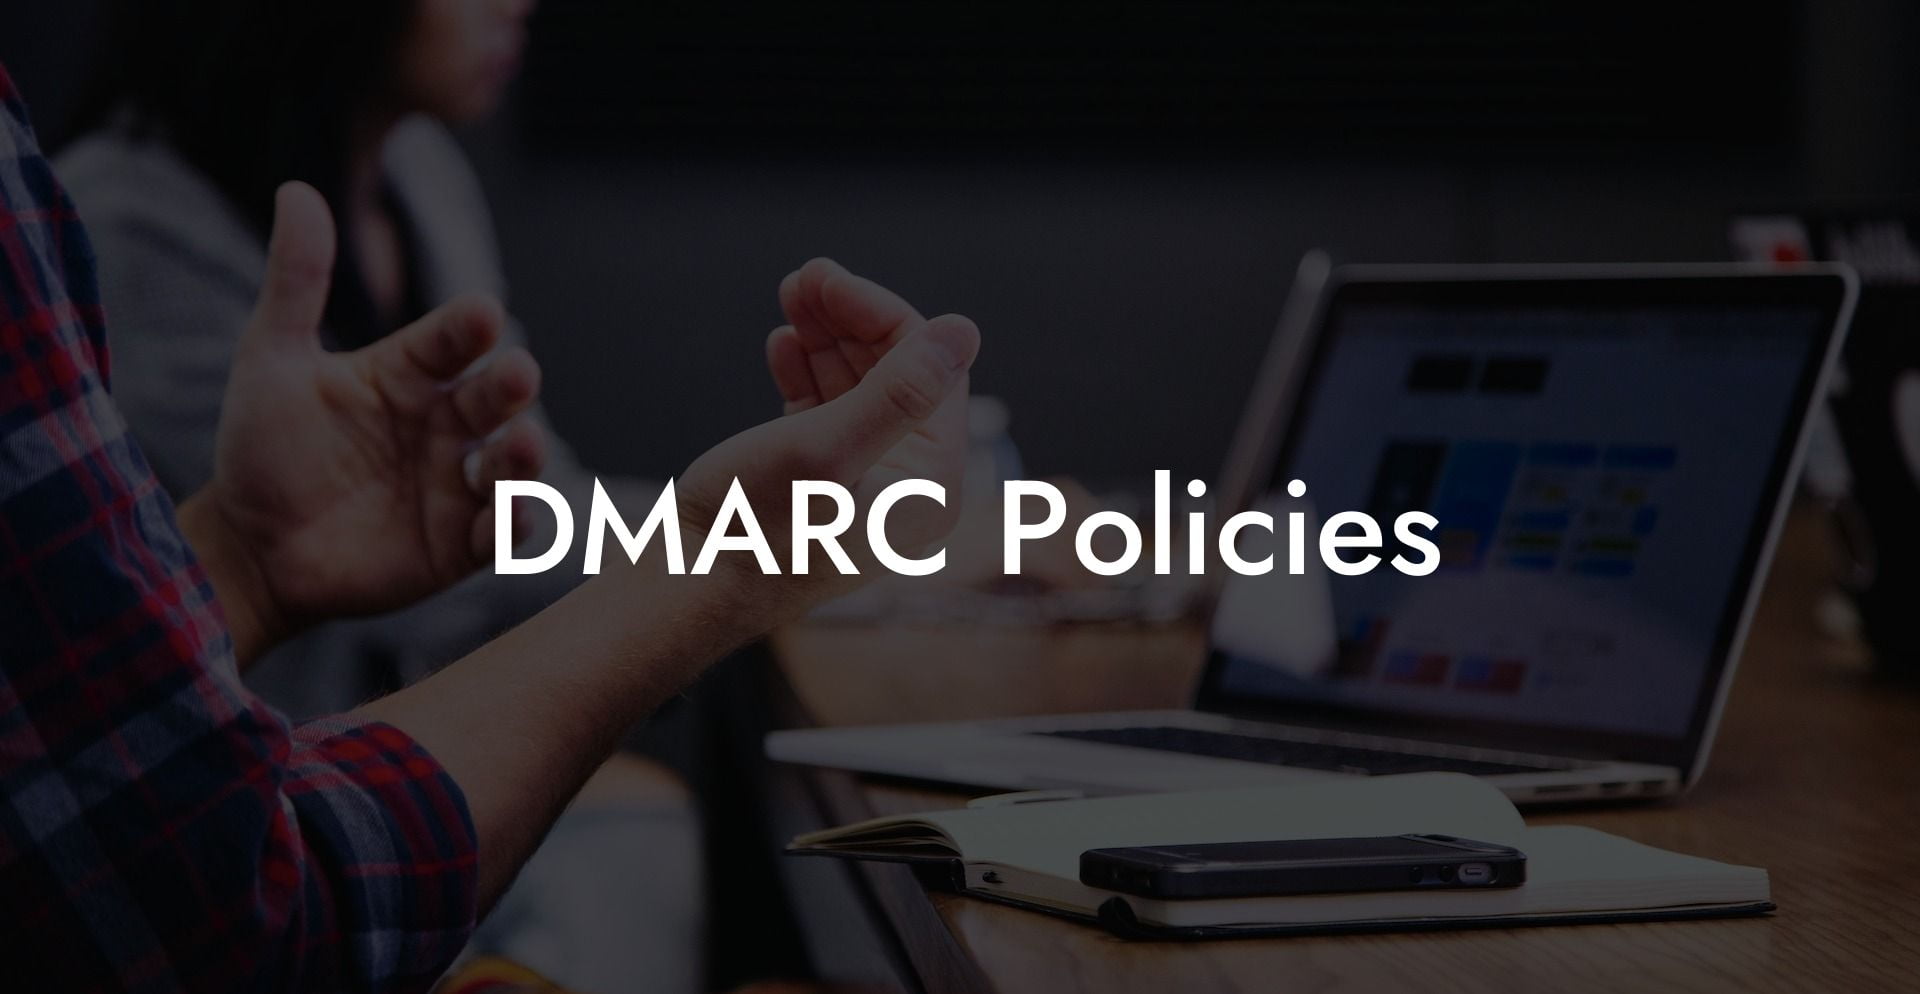 DMARC Policies